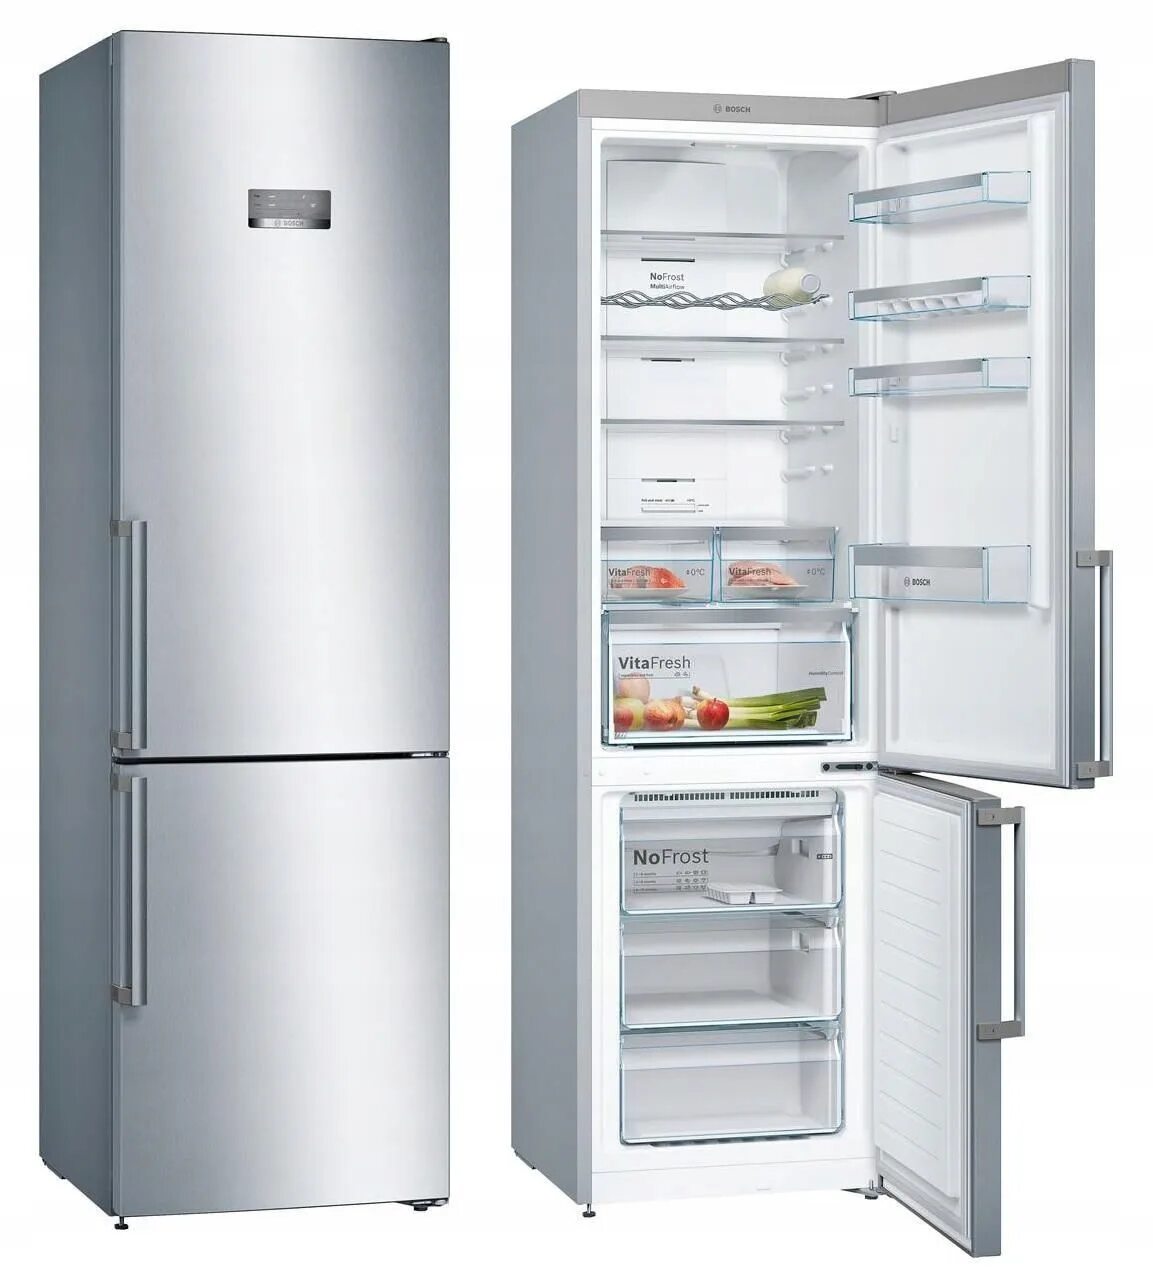 Bosch kgn49xi2or. Холодильник Bosch kgn36nl30u. Холодильник бош 49 KGN 49. Холодильник бош двухкамерный kge39al30r. Купить холодильник в спб ноу фрост двухкамерный